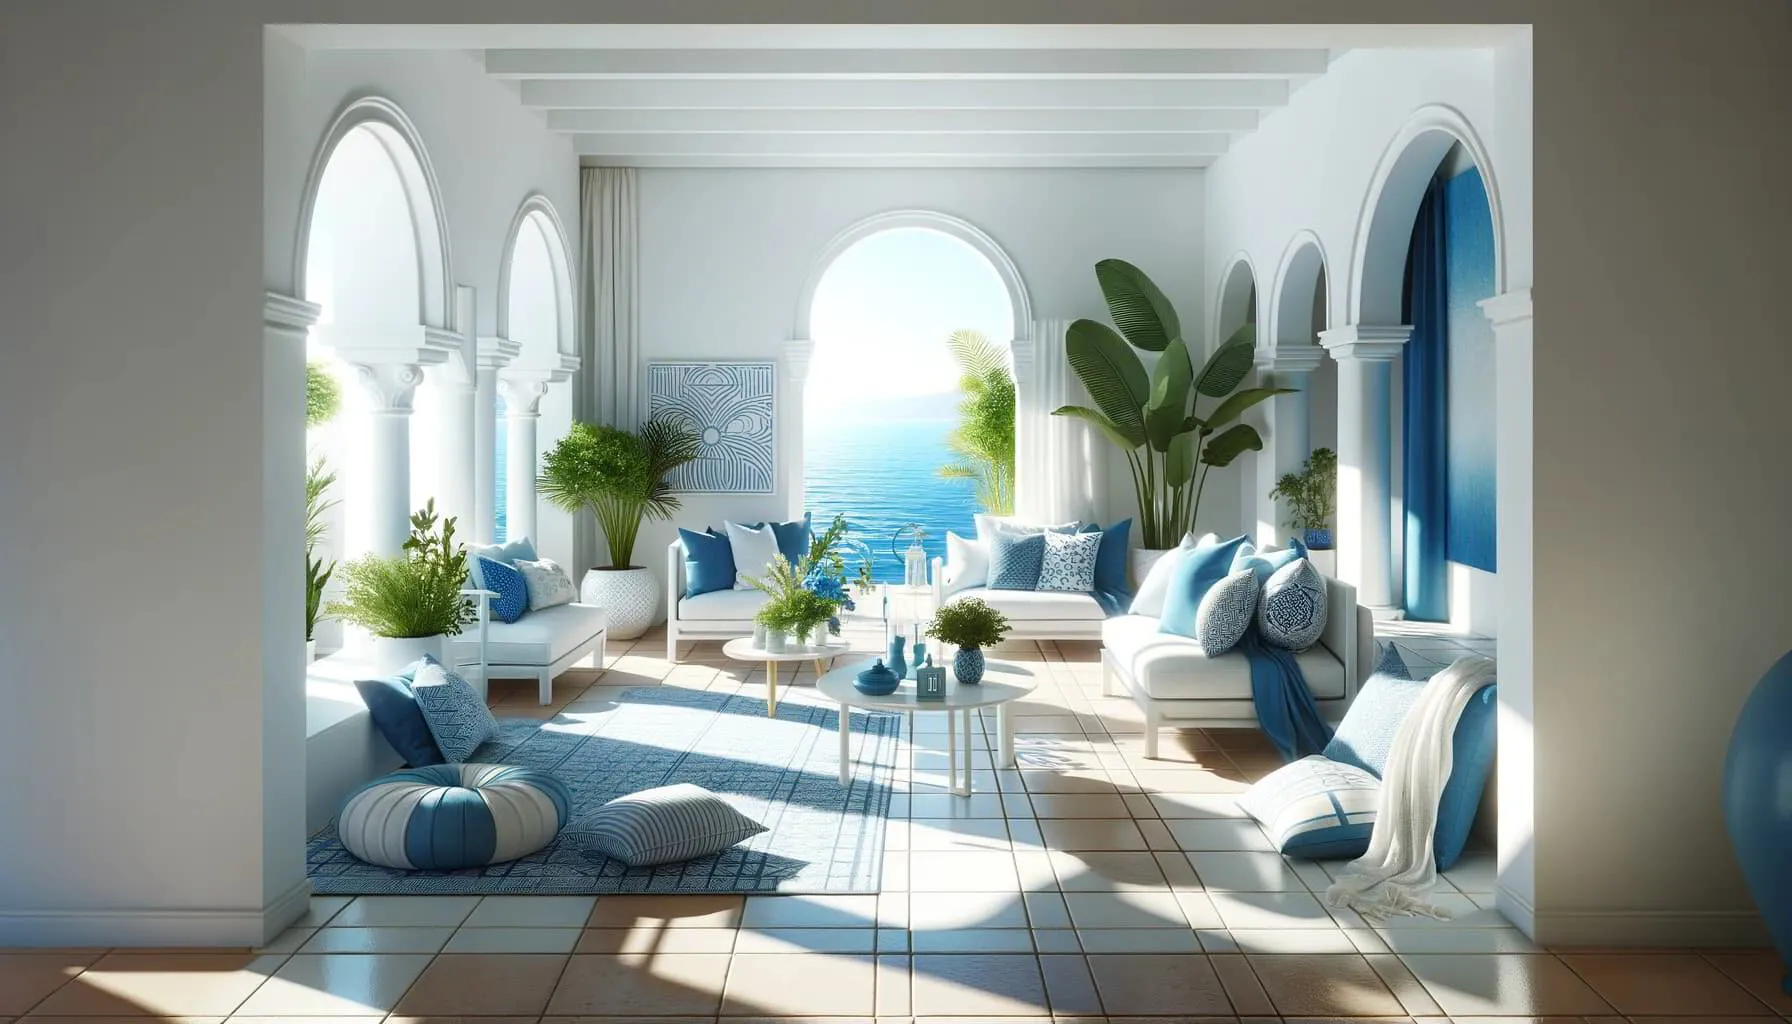 modern Mediterranean interior design scene